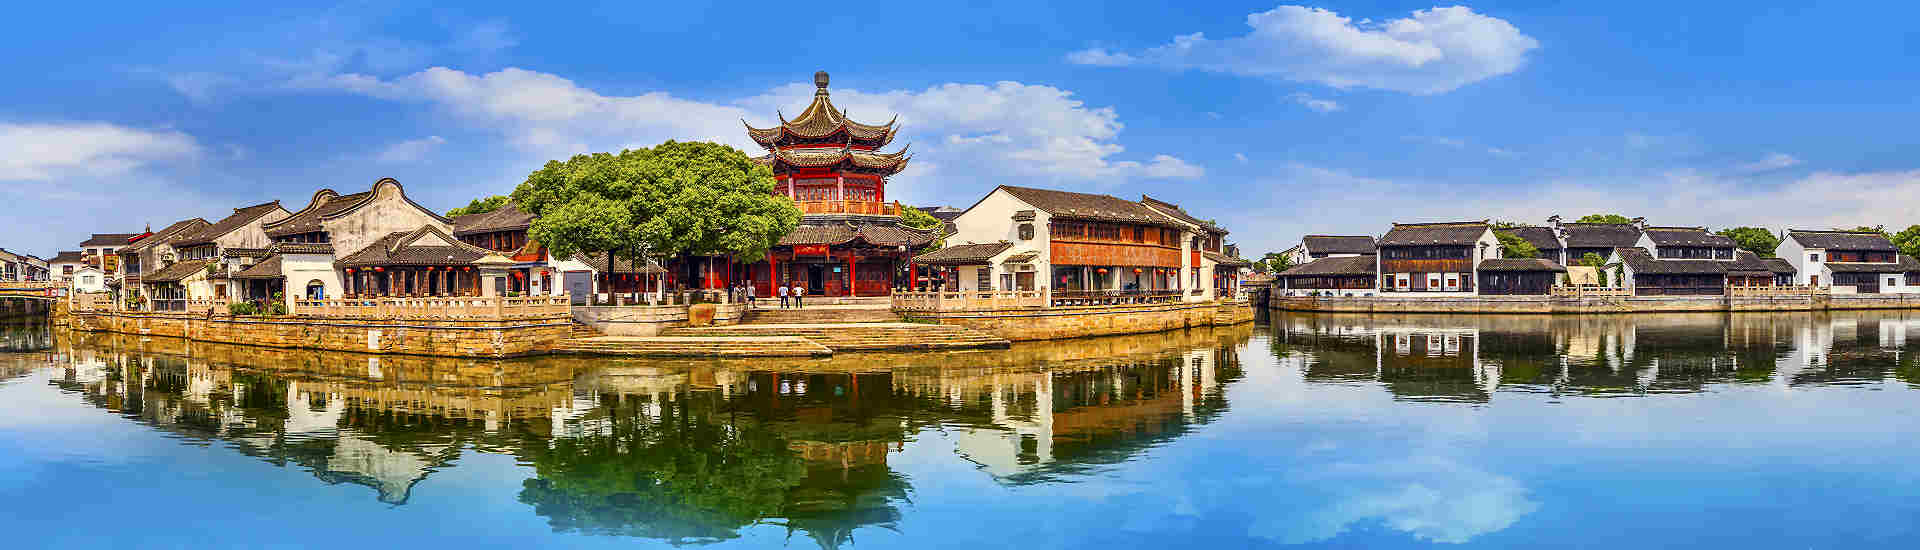 Bild von Suzhou, einer bezaubernden Stadt in China, die für ihre reiche Kultur und malerischen Gärten bekannt ist. Perfektes Reiseziel für China-Reisen